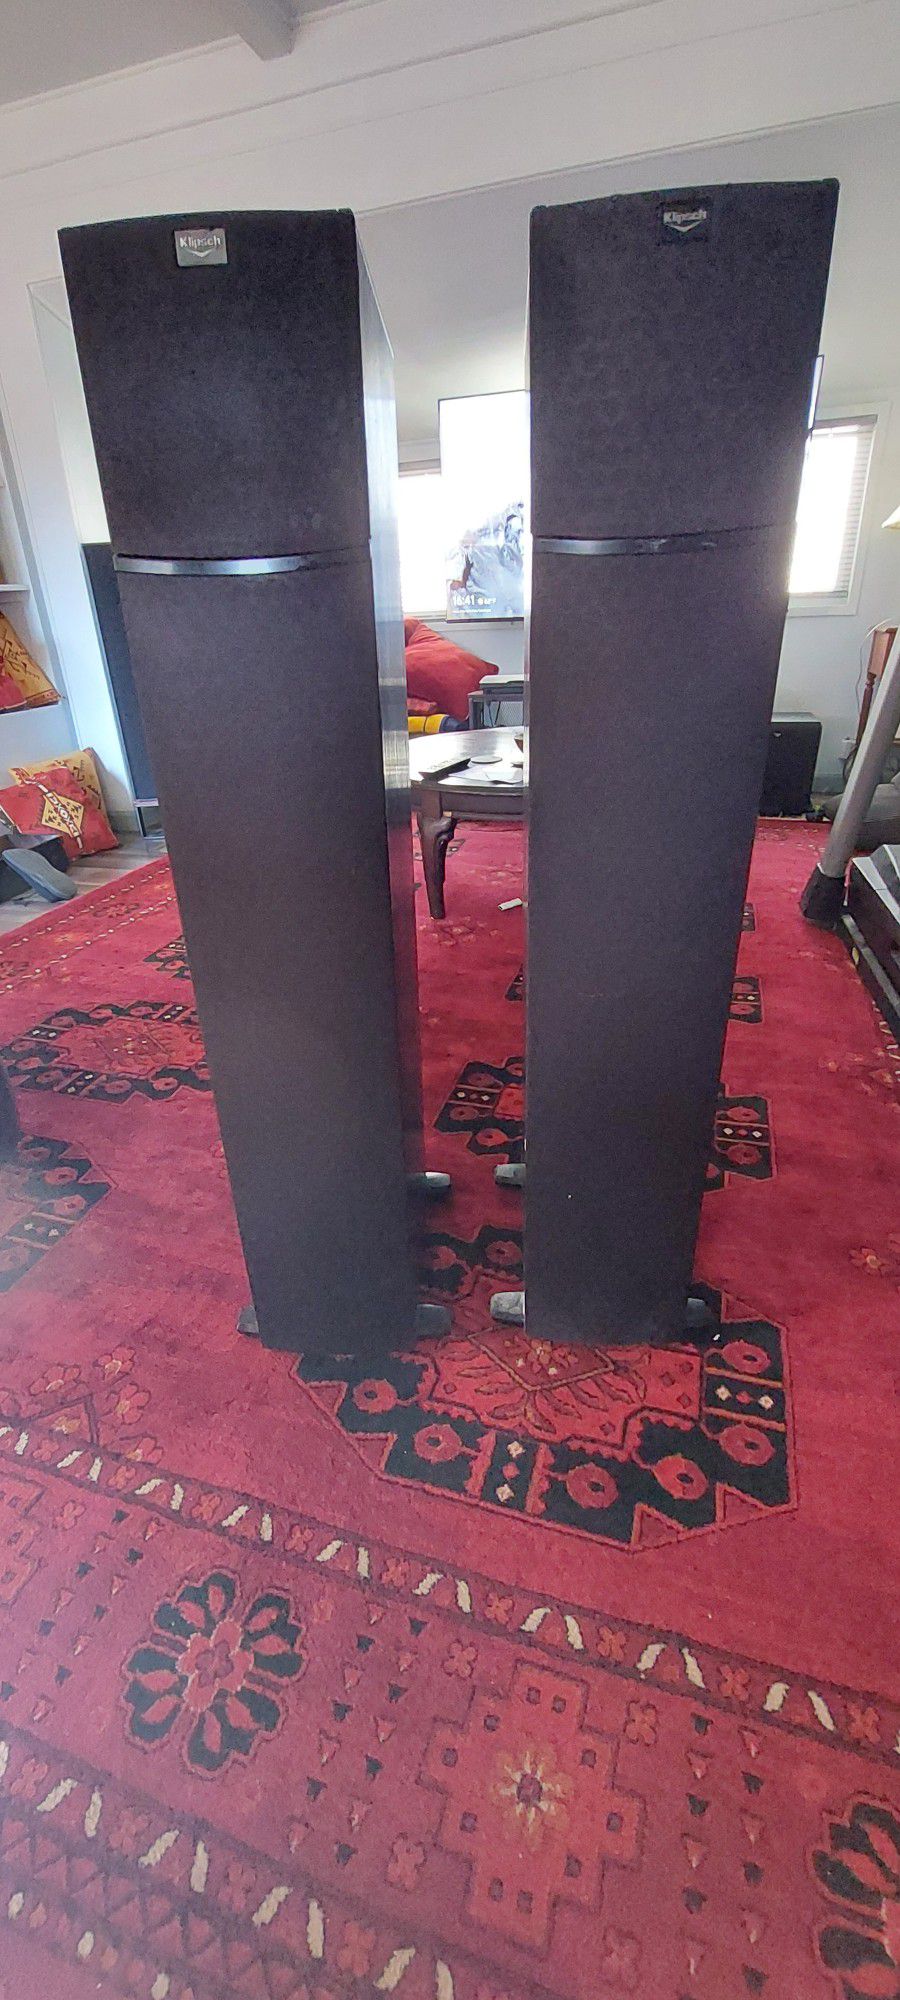 Klipsch Floor Standing Speakers